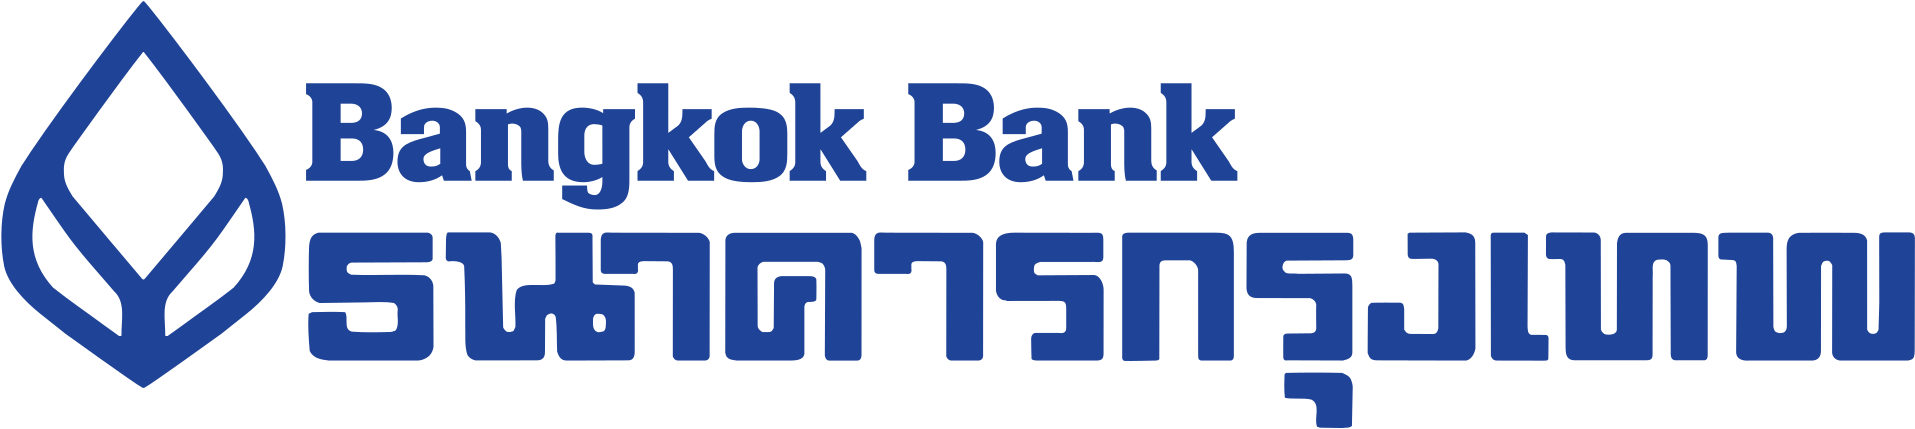 Bbl Bank Png - Bangkok Bank Logo Png Clipart (2000x514), Png Download